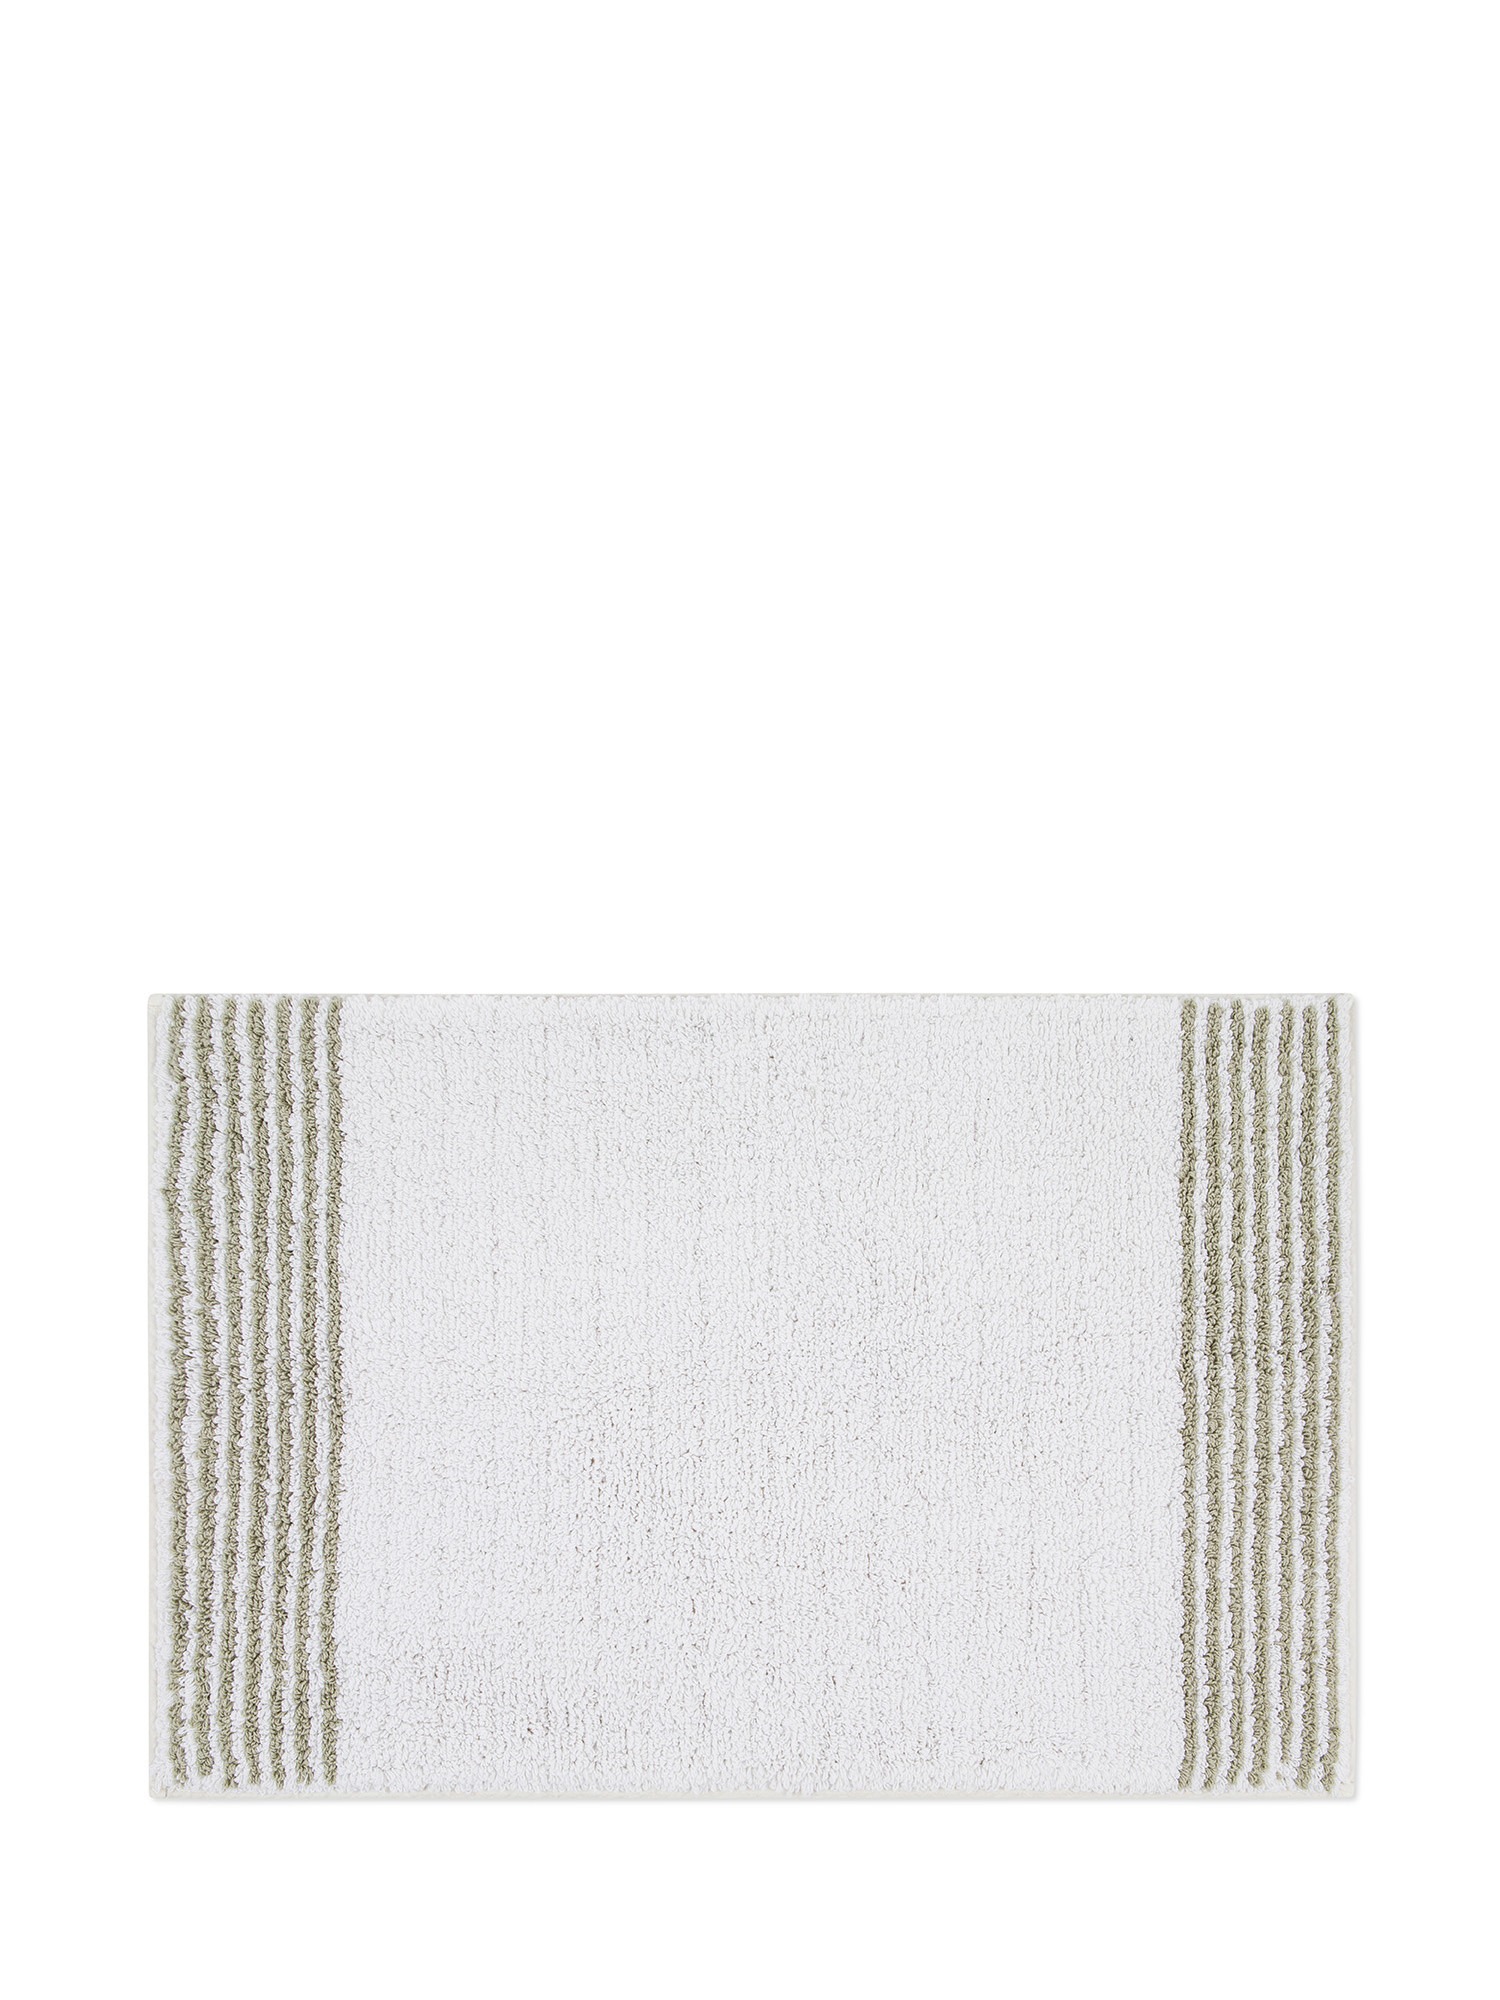 Tappeto bagno spugna di cotone con righe a contrasto, Grigio perla, large image number 0